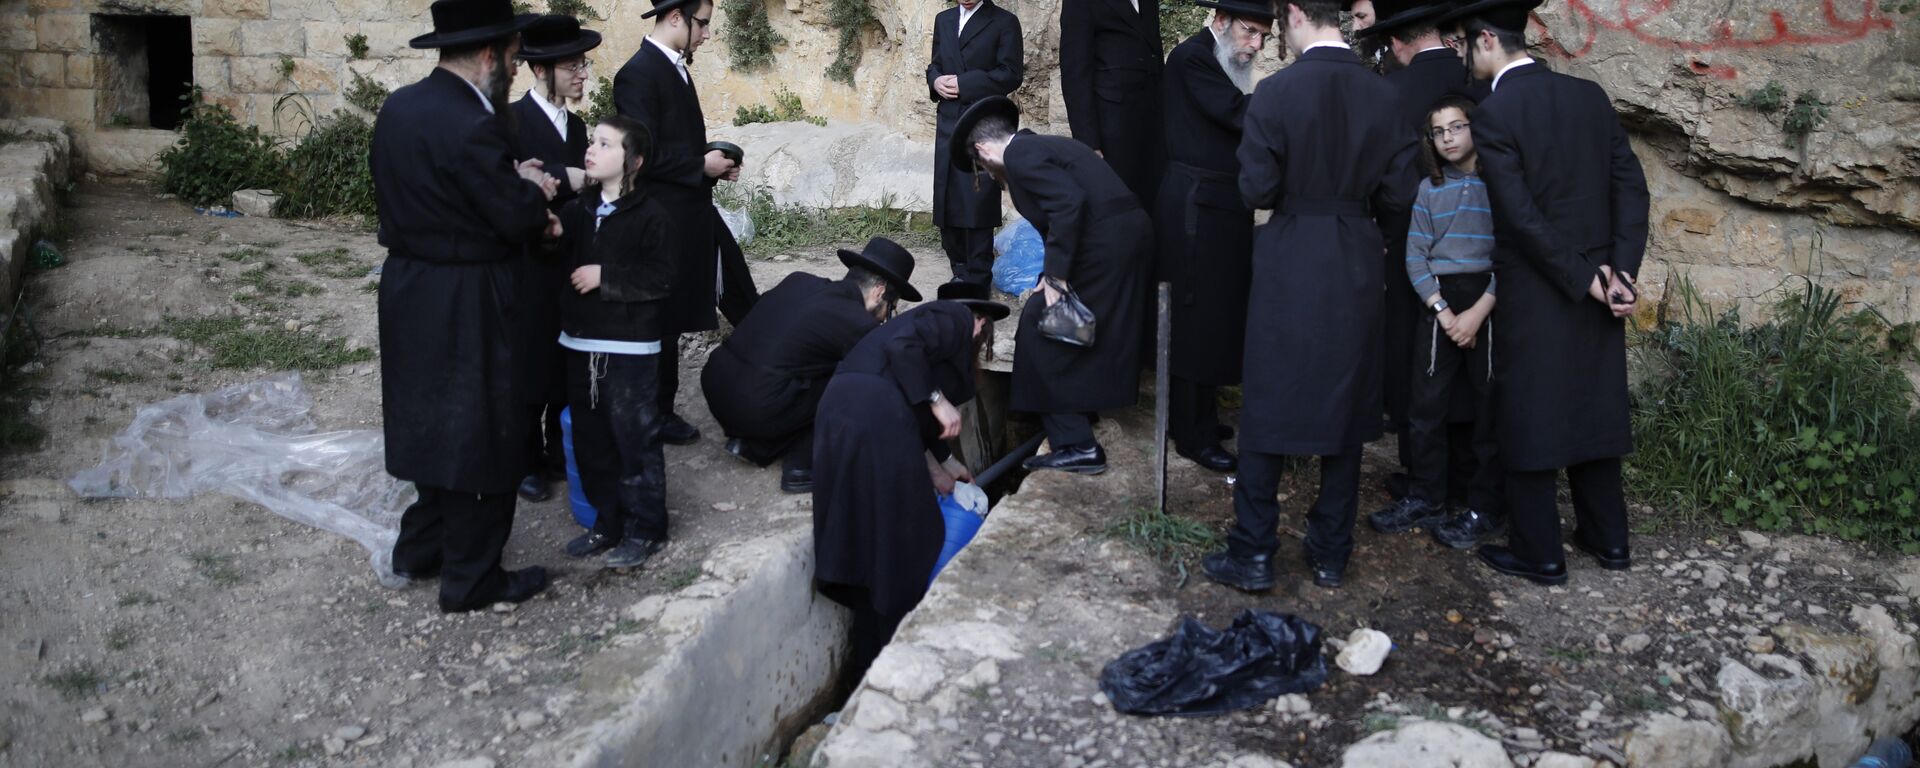 Ультраортодоксальные евреи в Иерусалиме собирают воду из горного источника, которая будет использоваться для выпечки пресного хлеба - Sputnik Грузия, 1920, 26.03.2021